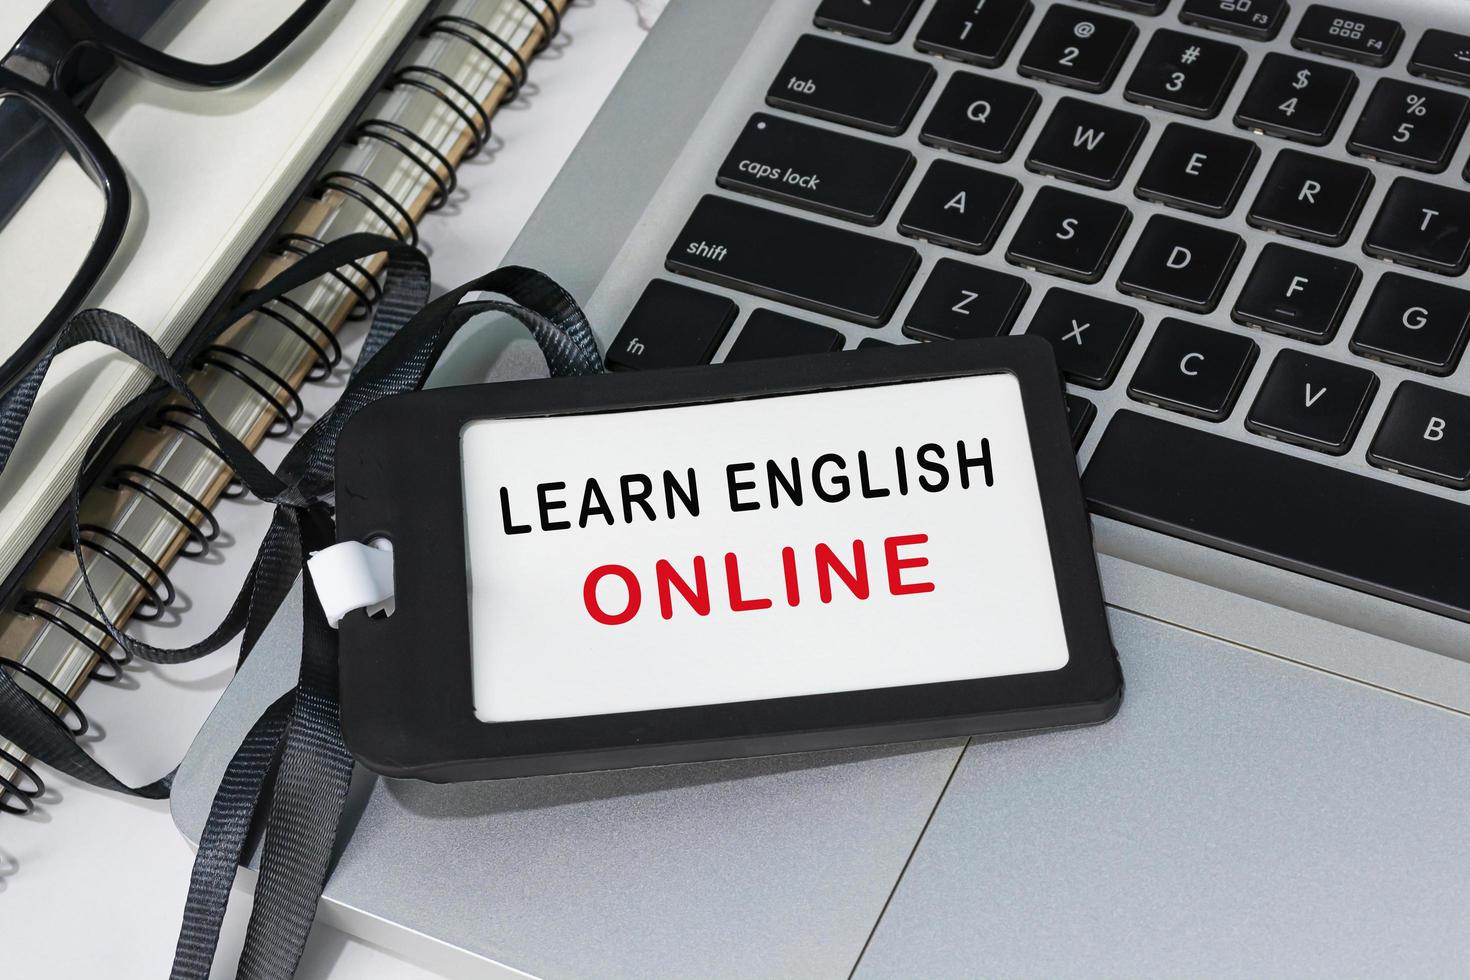 leer Engelse online tekst geschreven op een zwart naamplaatje dat op een laptop is geplaatst. foto